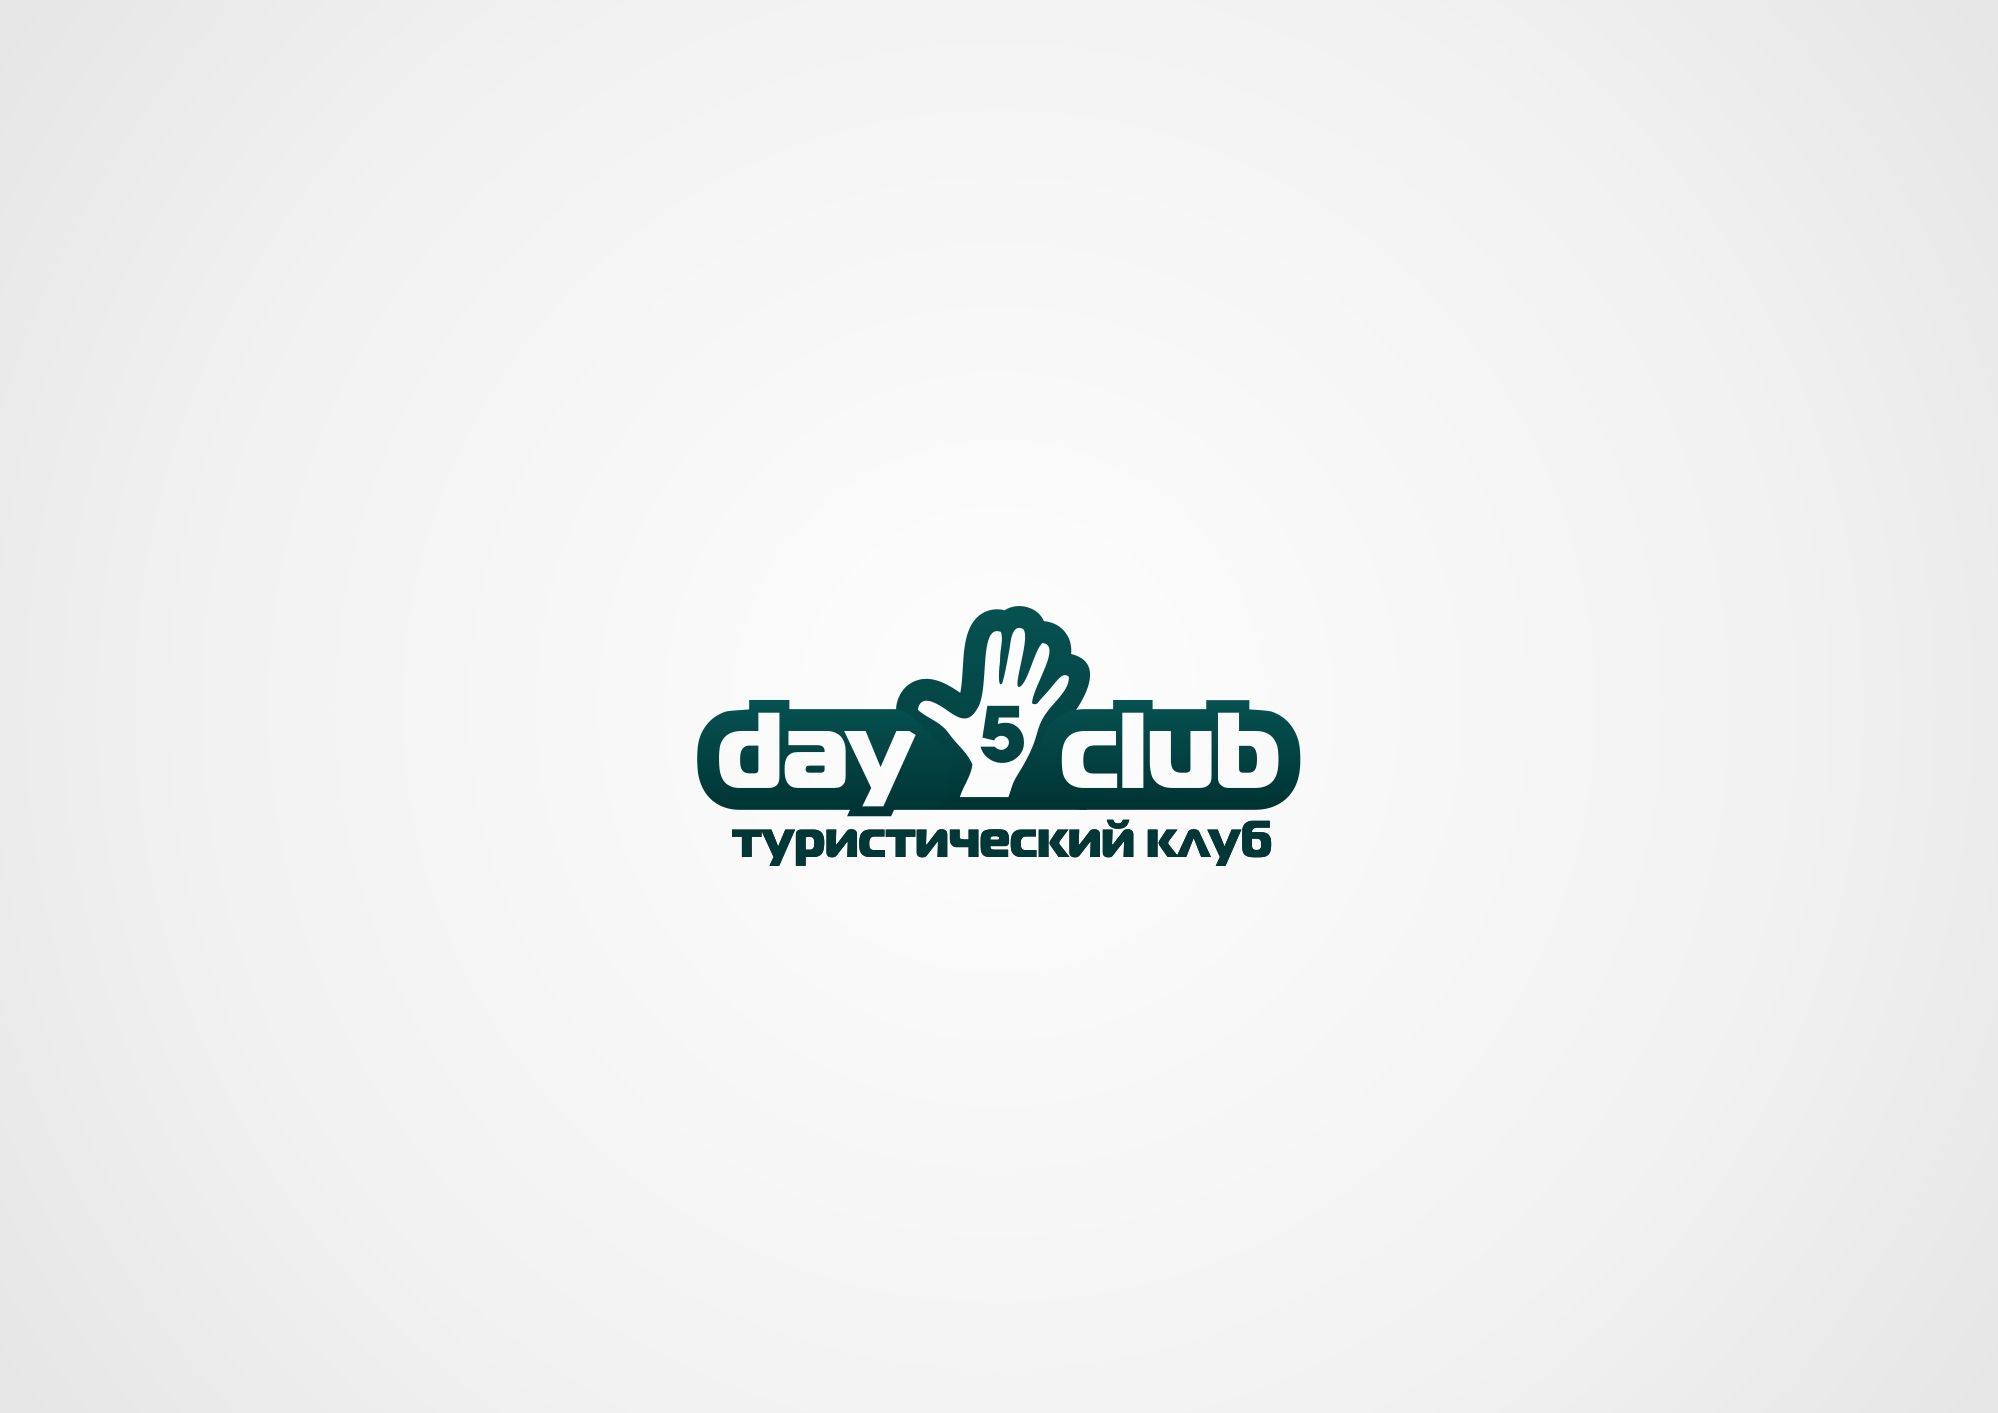 Логотип для Дай 5 Клуб (day5club) - дизайнер lum1x94